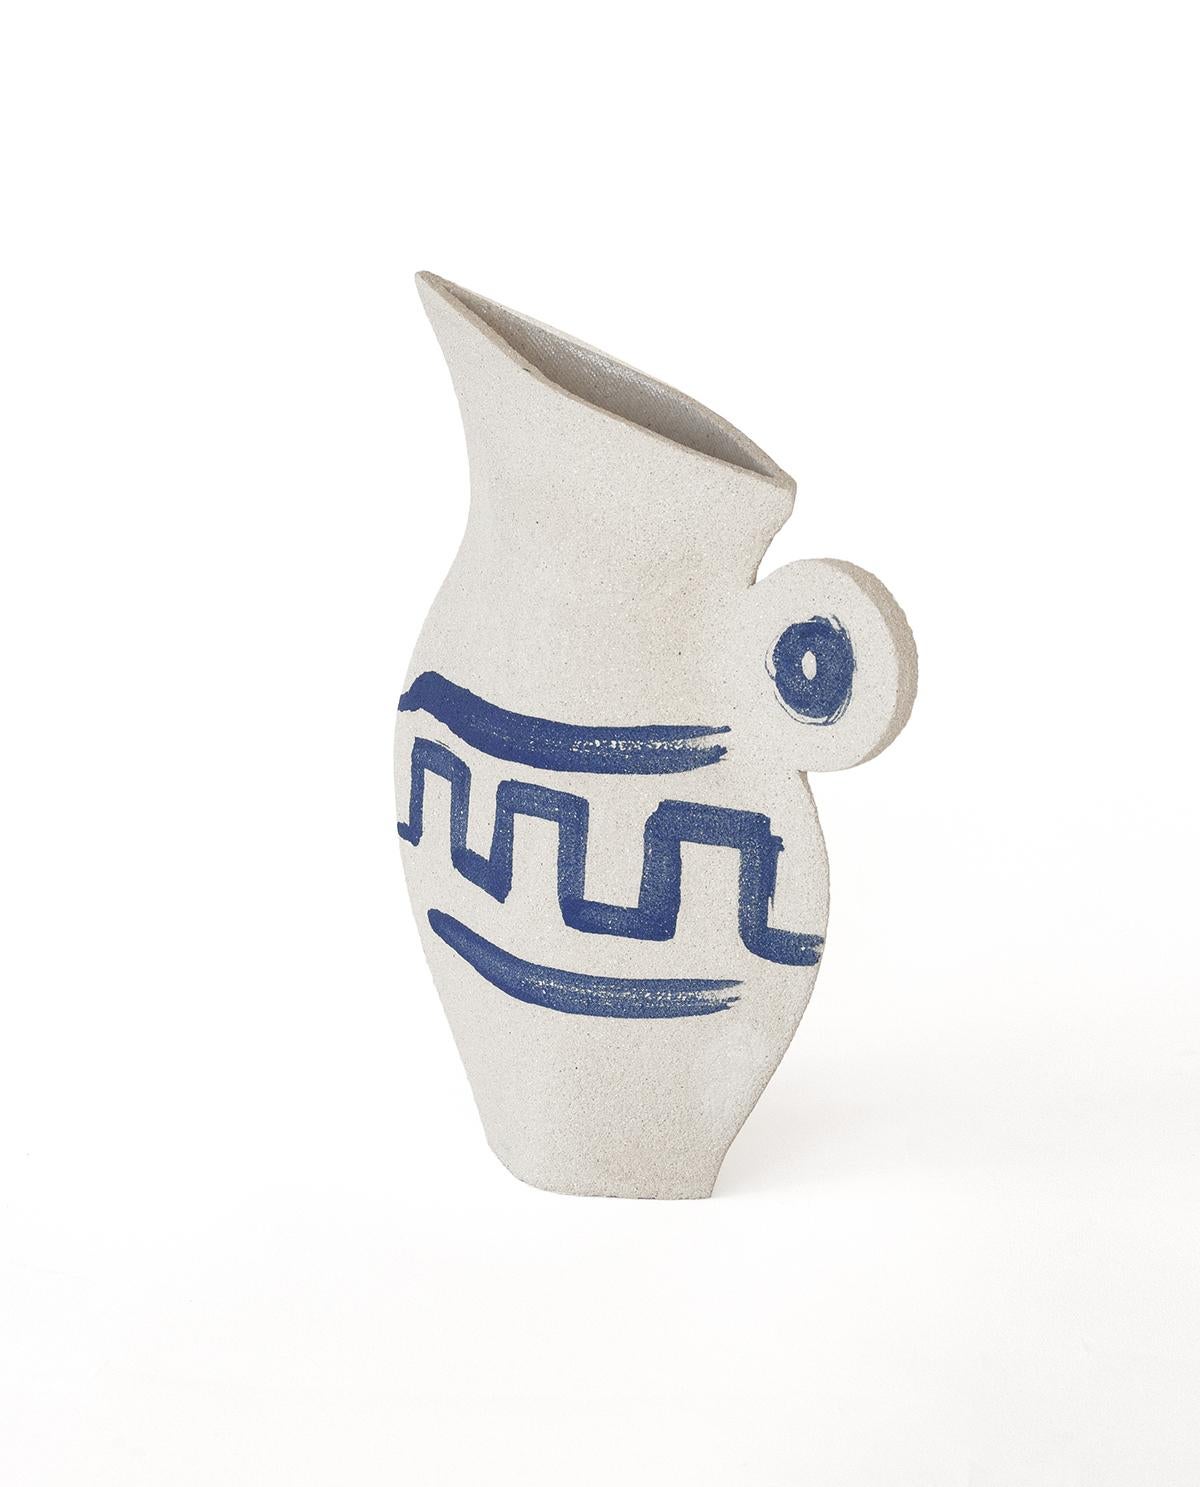 Faisant partie d'un triptyque captivant mêlant poterie grecque ancienne et design contemporain, le vase 